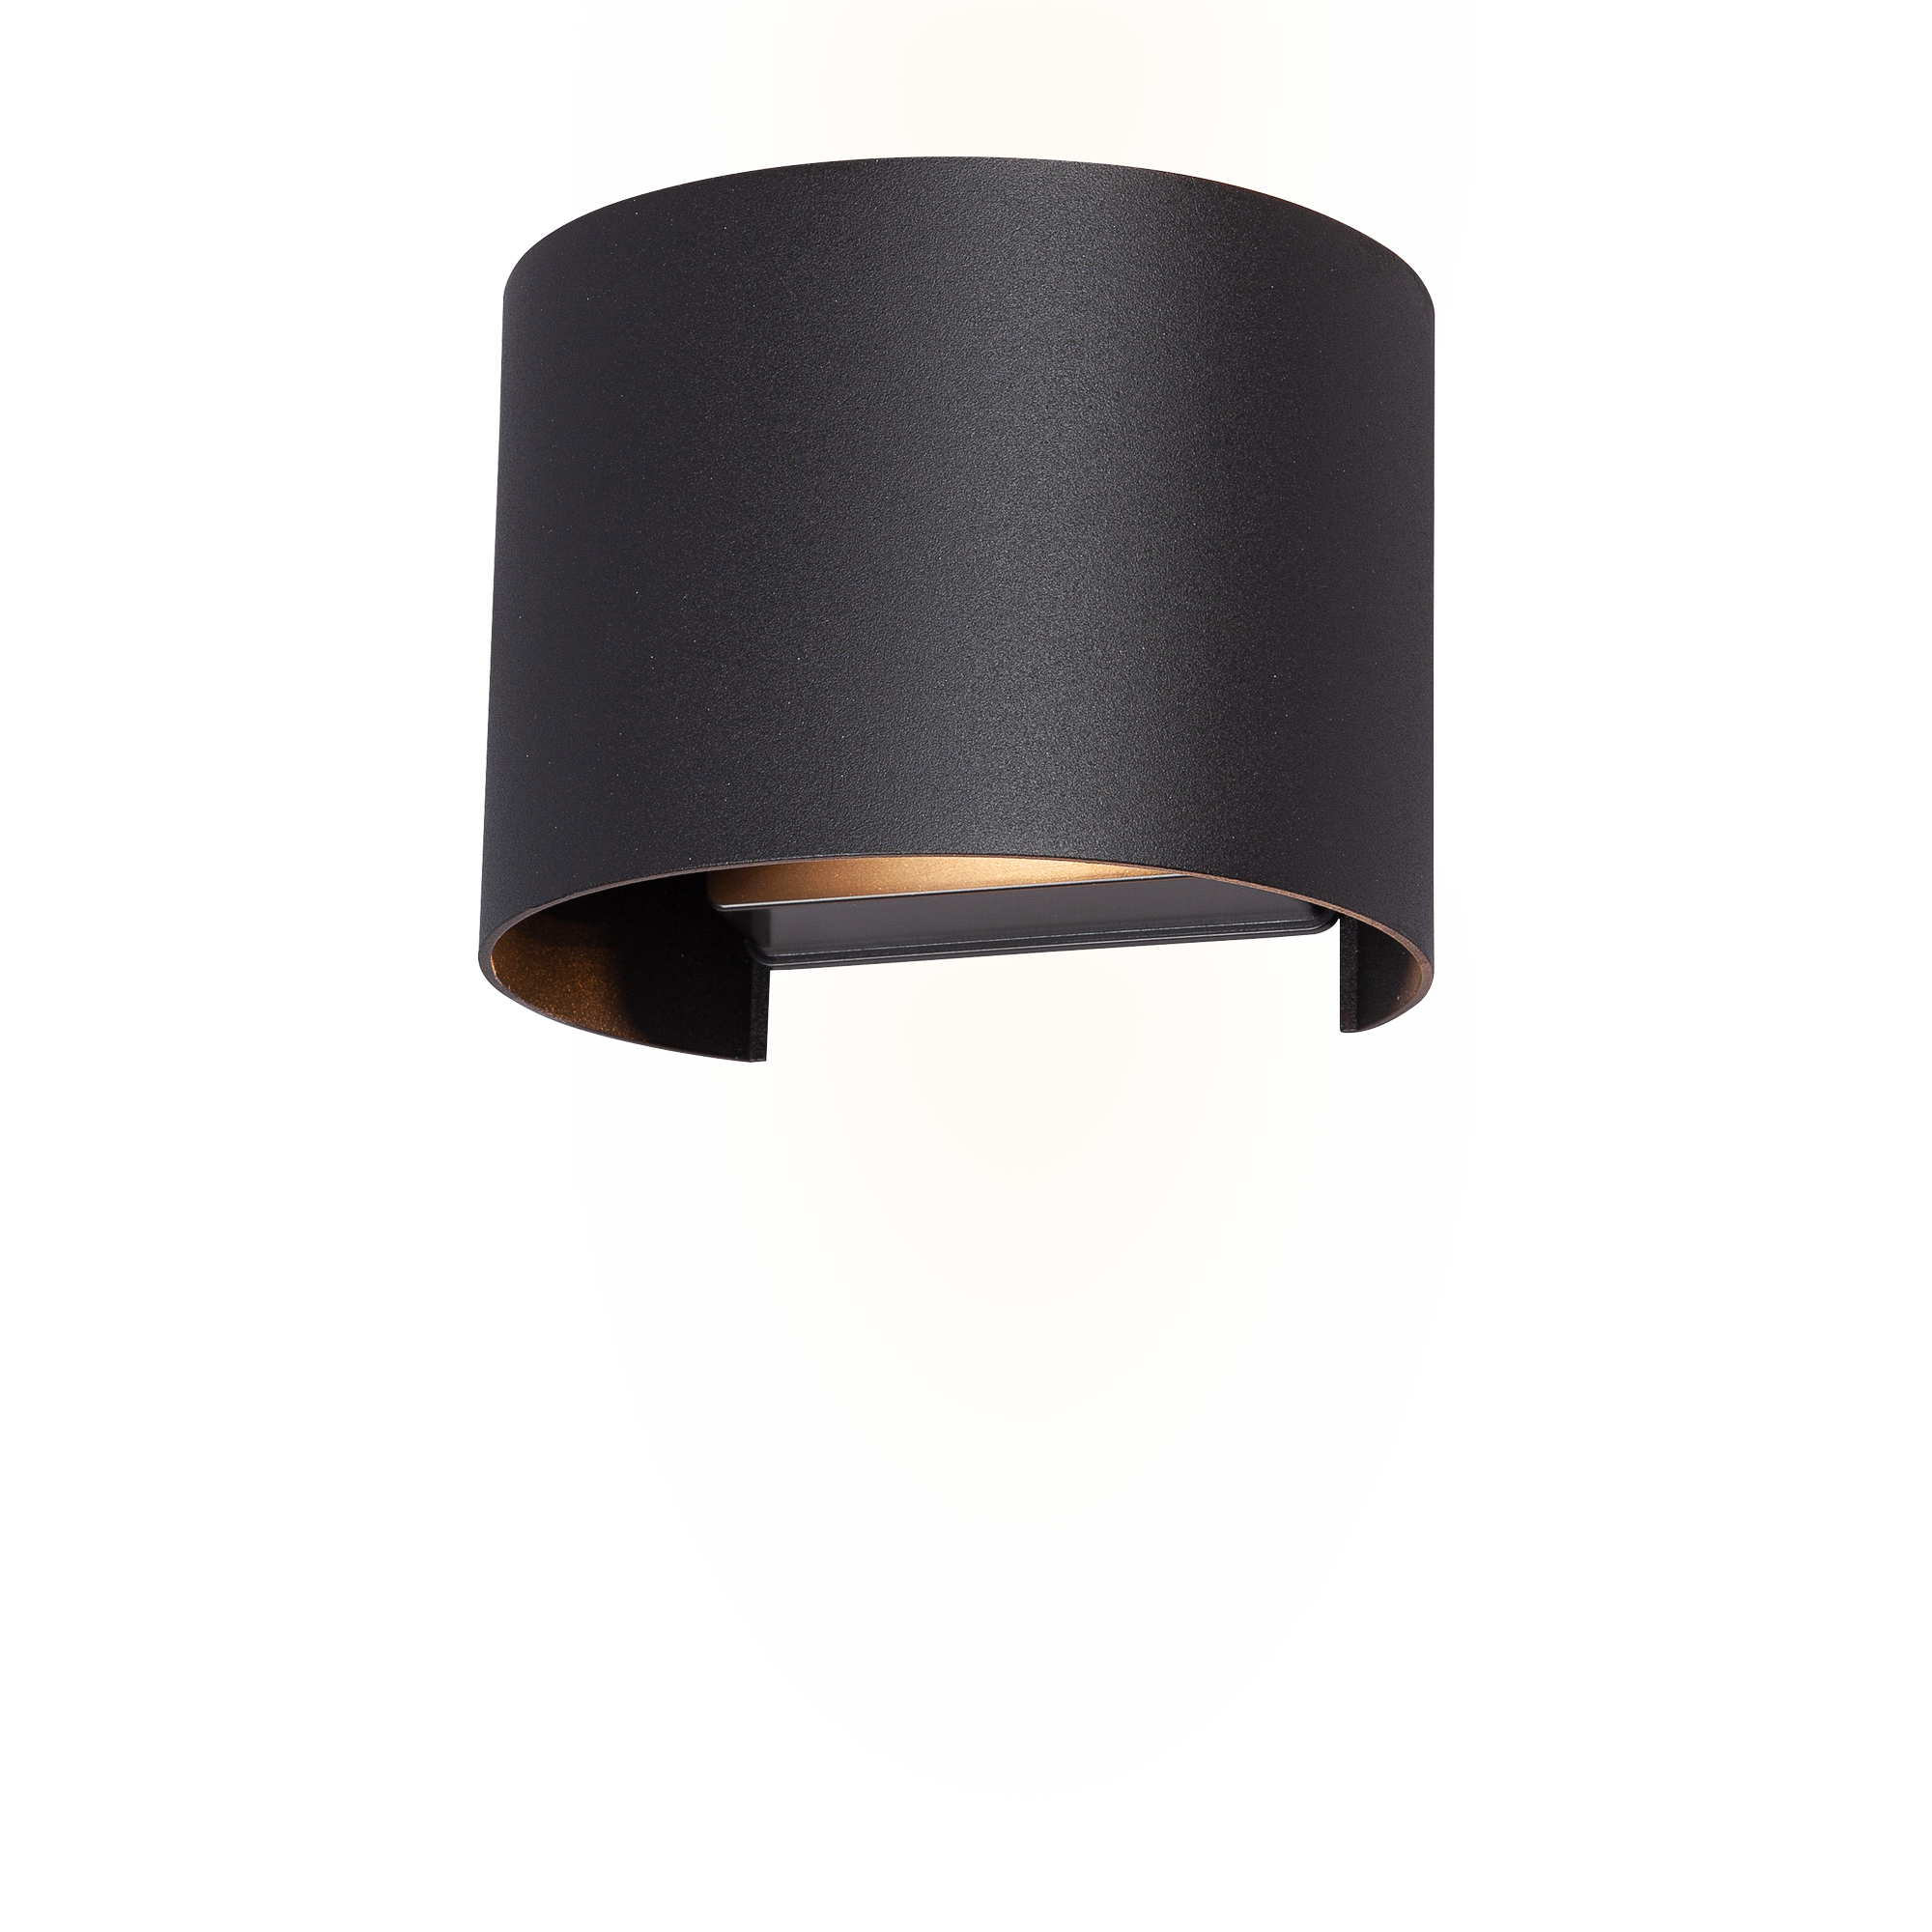 LED-Außenwandleuchte 'Pula' schwarz halbrund 11,5 x 13,5 x 10 cm + product picture